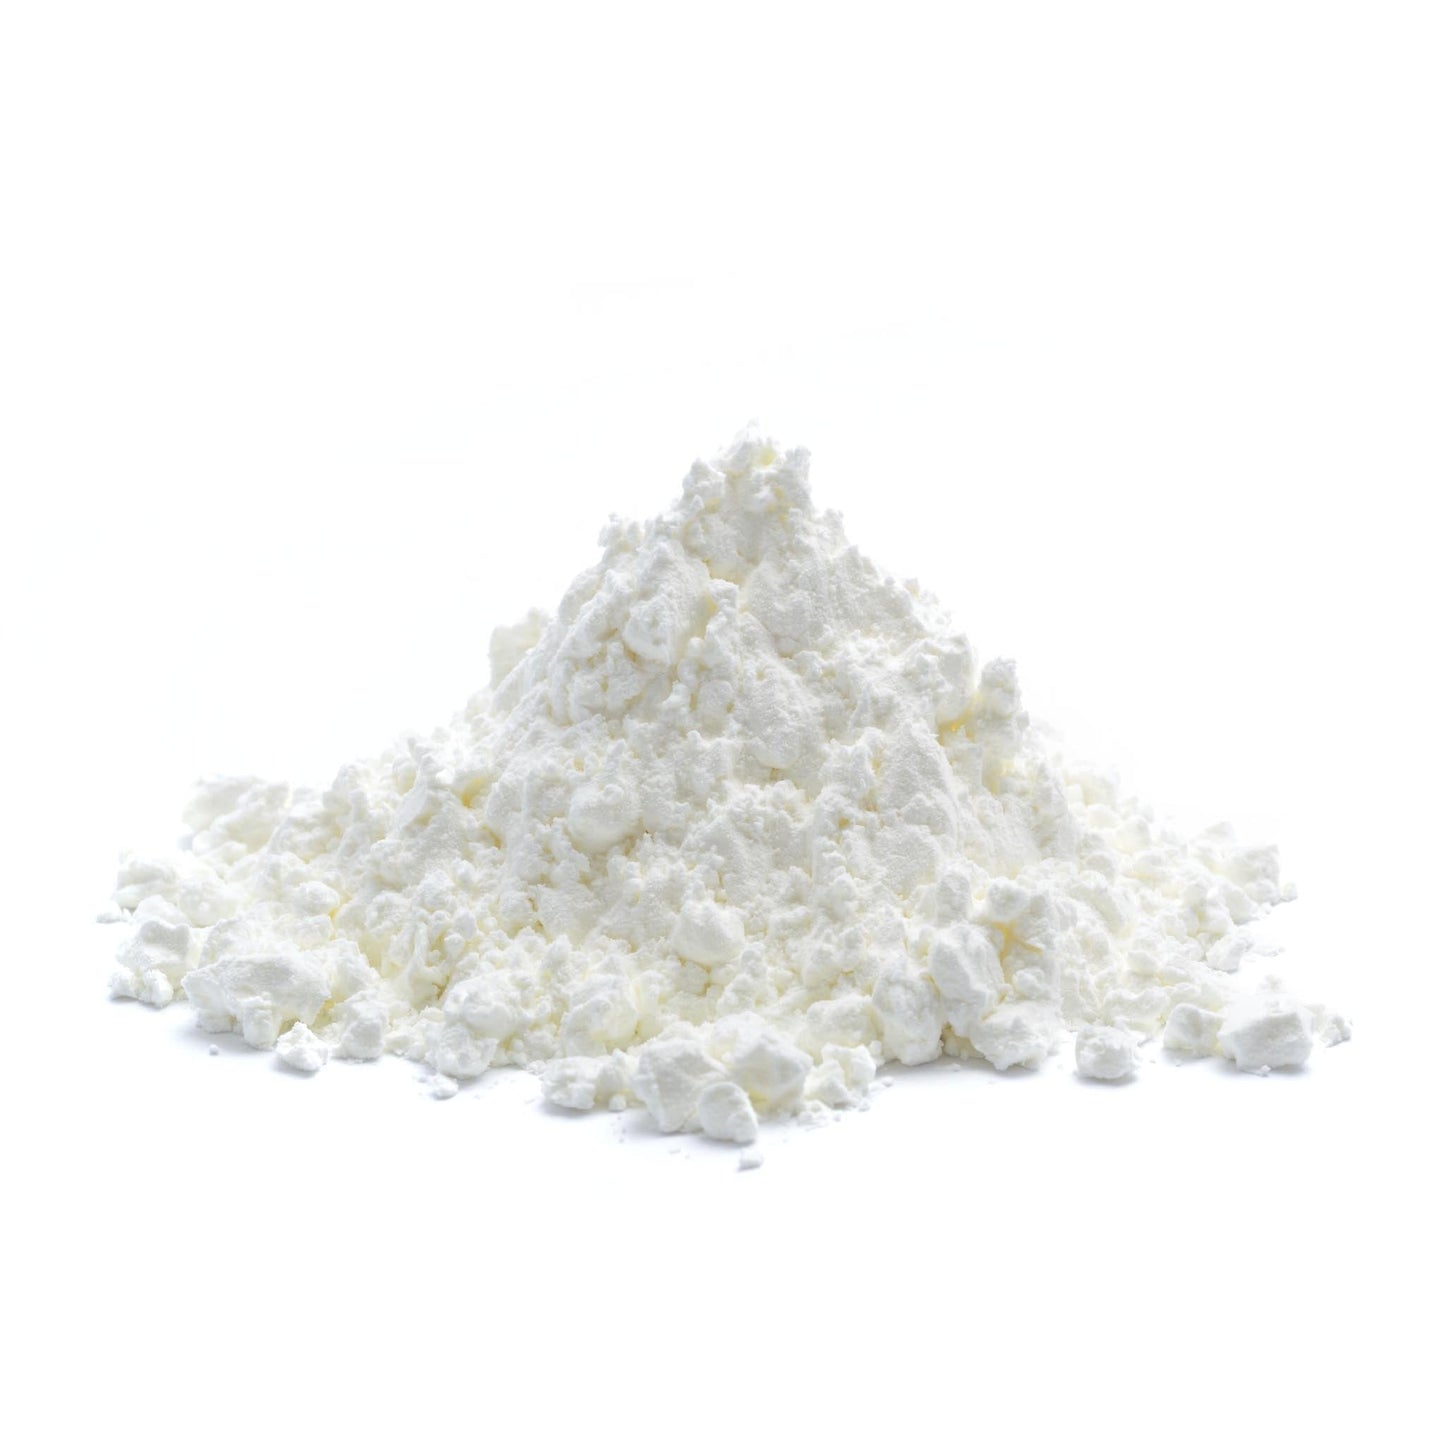 10x Powdered Sugar - Confectioners Sugar